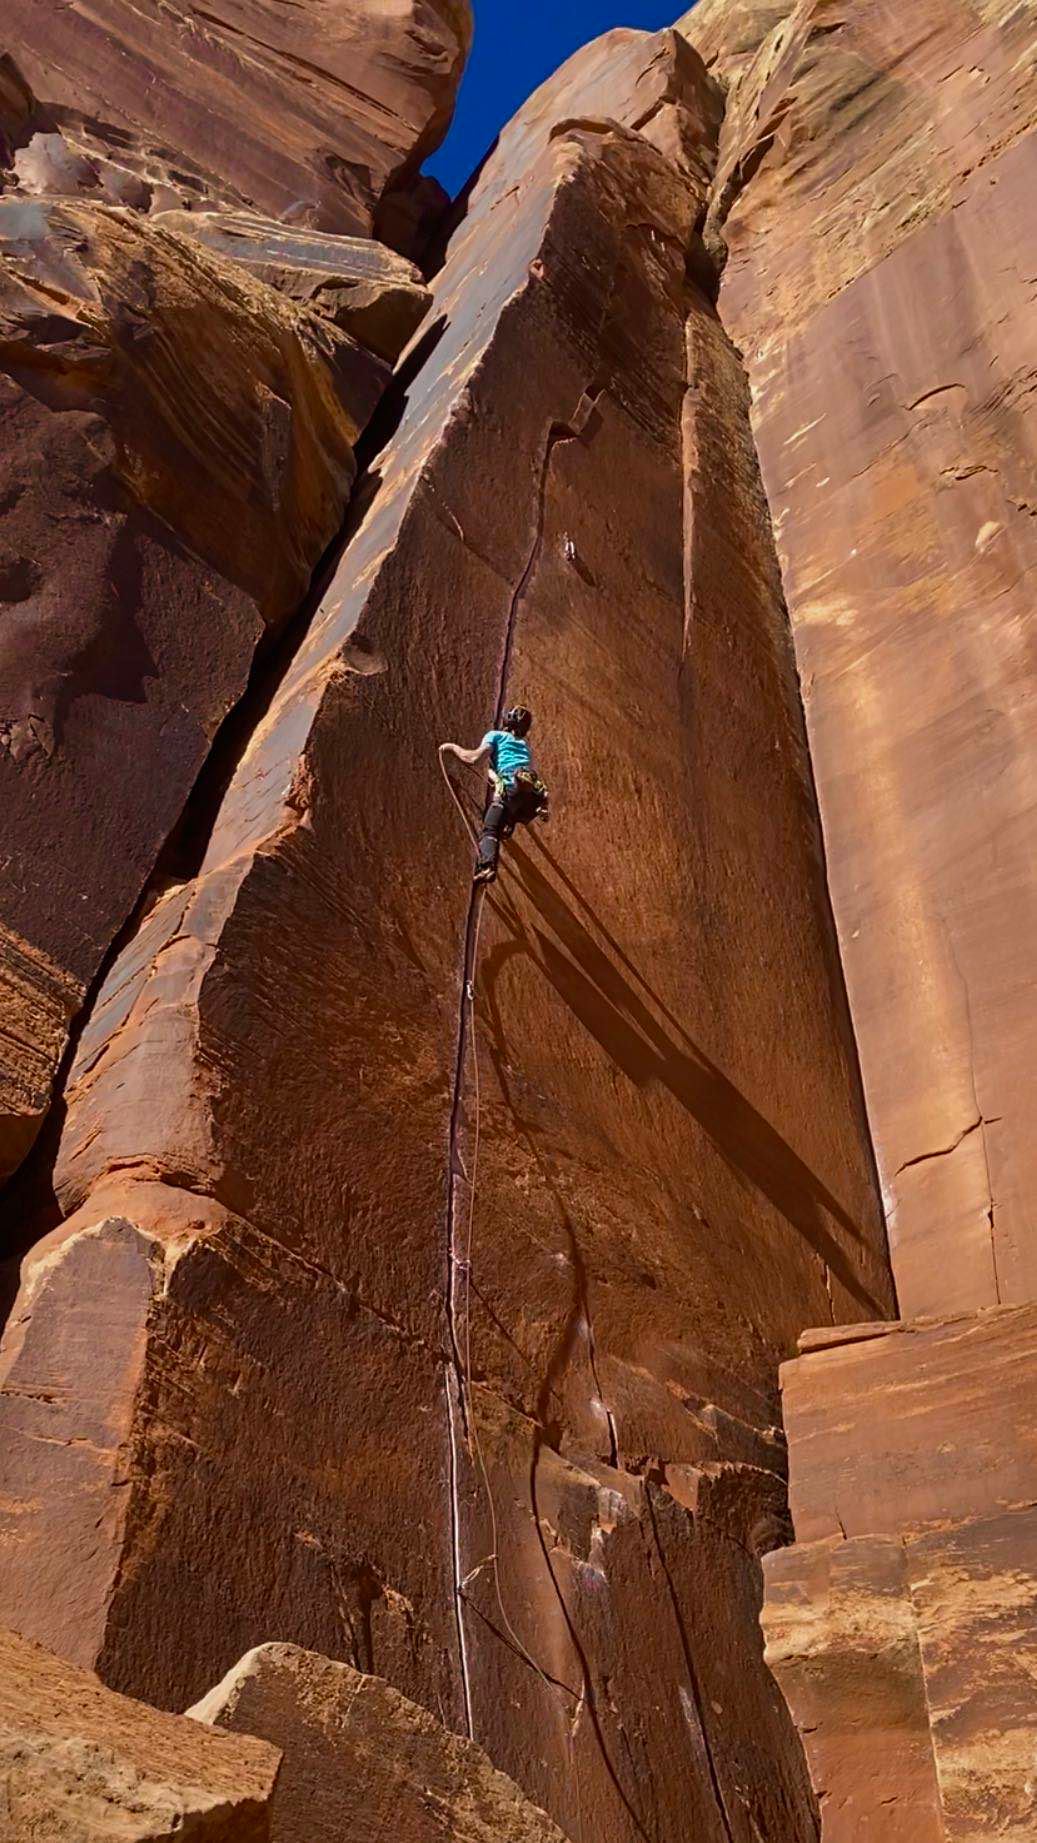 【三文魚岩壁挑戰】 The North Face運動員 劉贇卿(三文魚) 來到世界著名傳統攀岩訓練場 —— 印第安溪Indian Creek。首日選擇高難線路眾多的Cat Wall。#探索永不停止